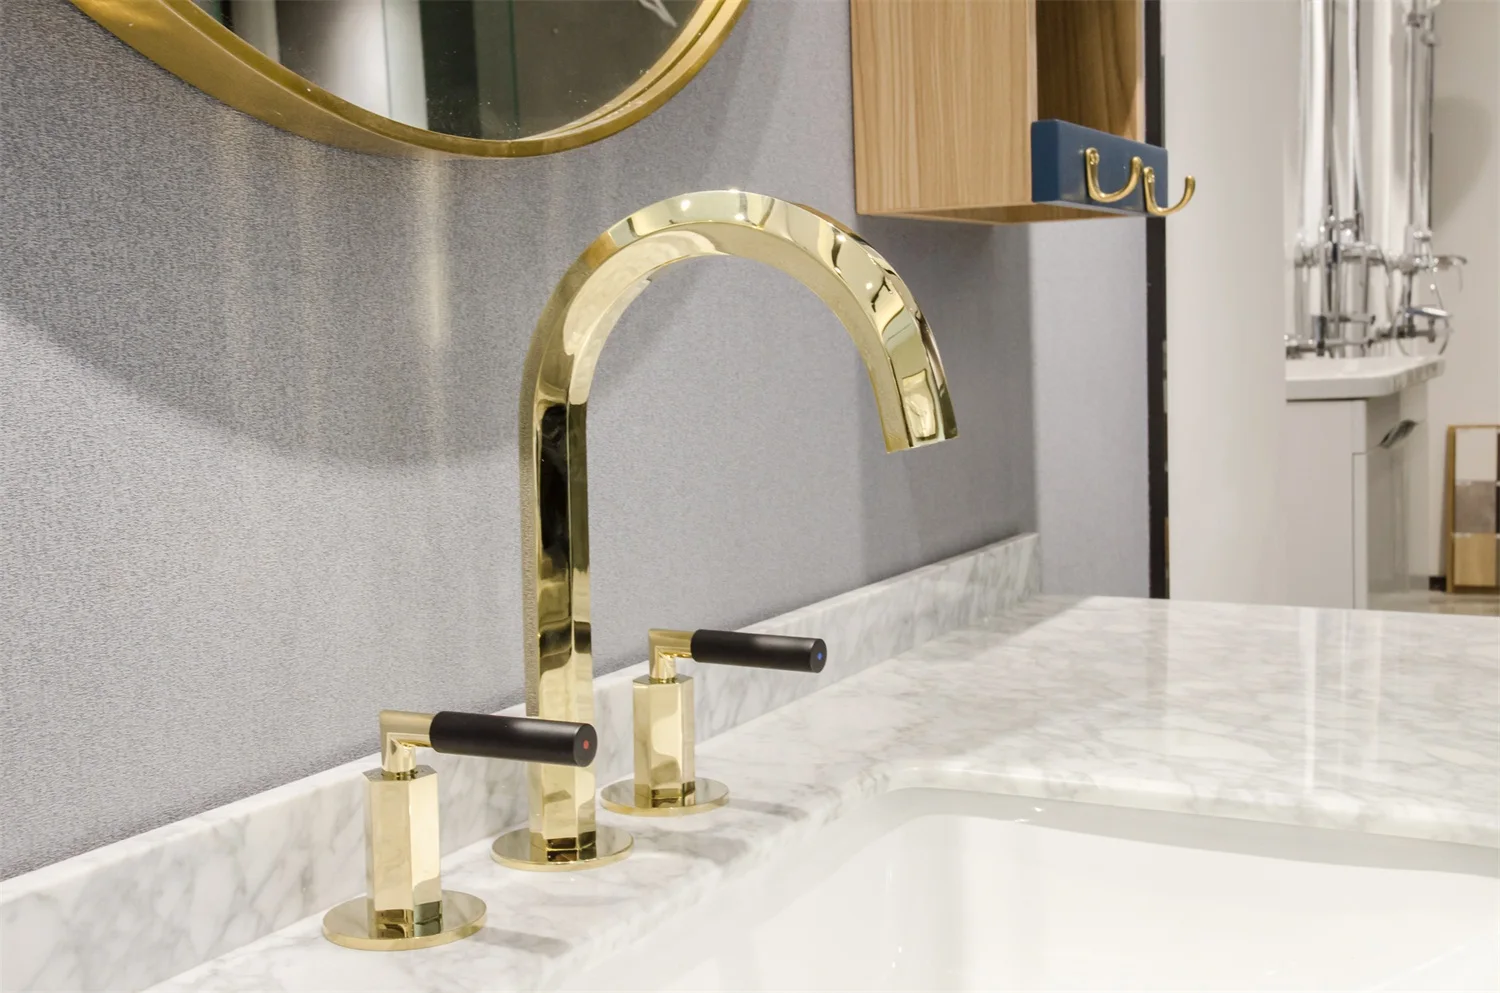 Brand Names Sanitary Manufacturer Restroom 3 Hole Gold Faucets Bathroom Buy Gold Faucets Bathroom